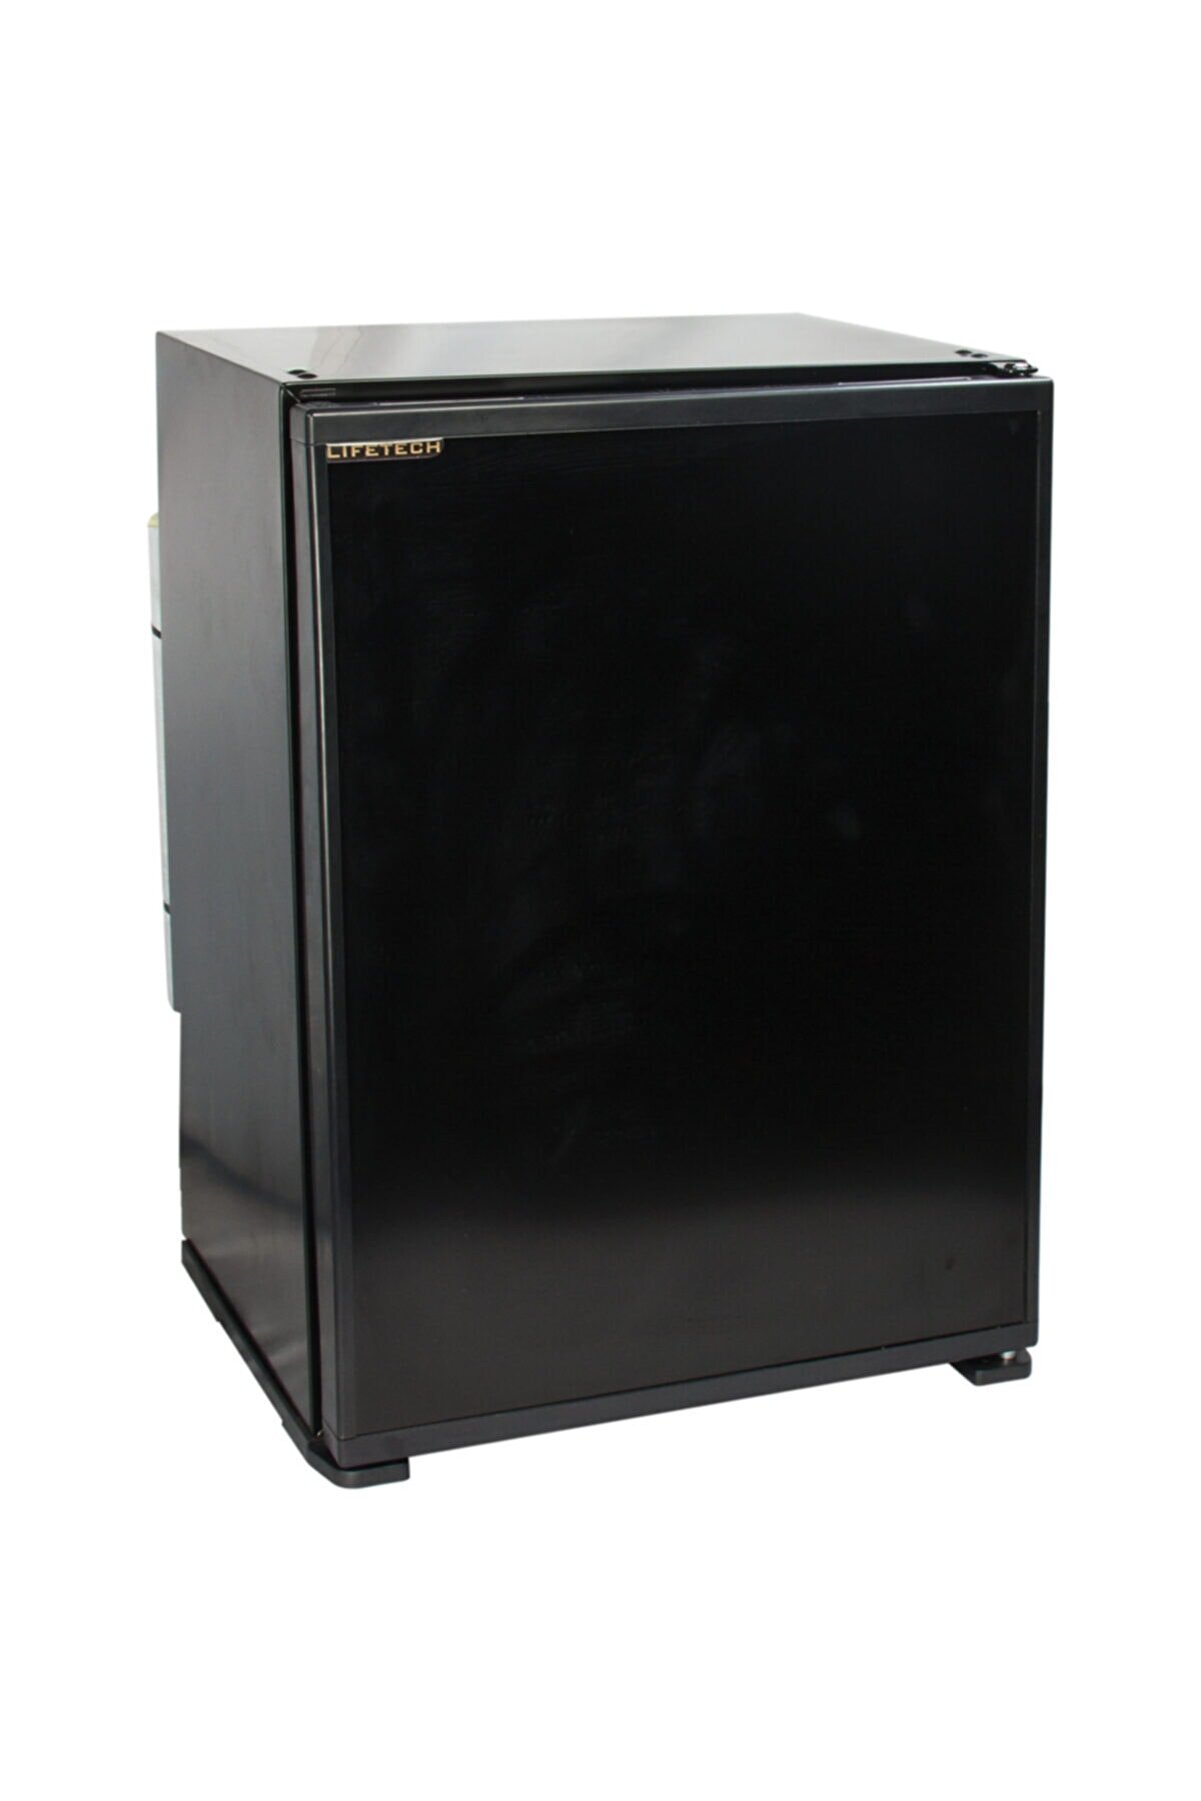 Lifetech Lf-40 Siyah Blok Kapı Buzdolabı, Soğutucu